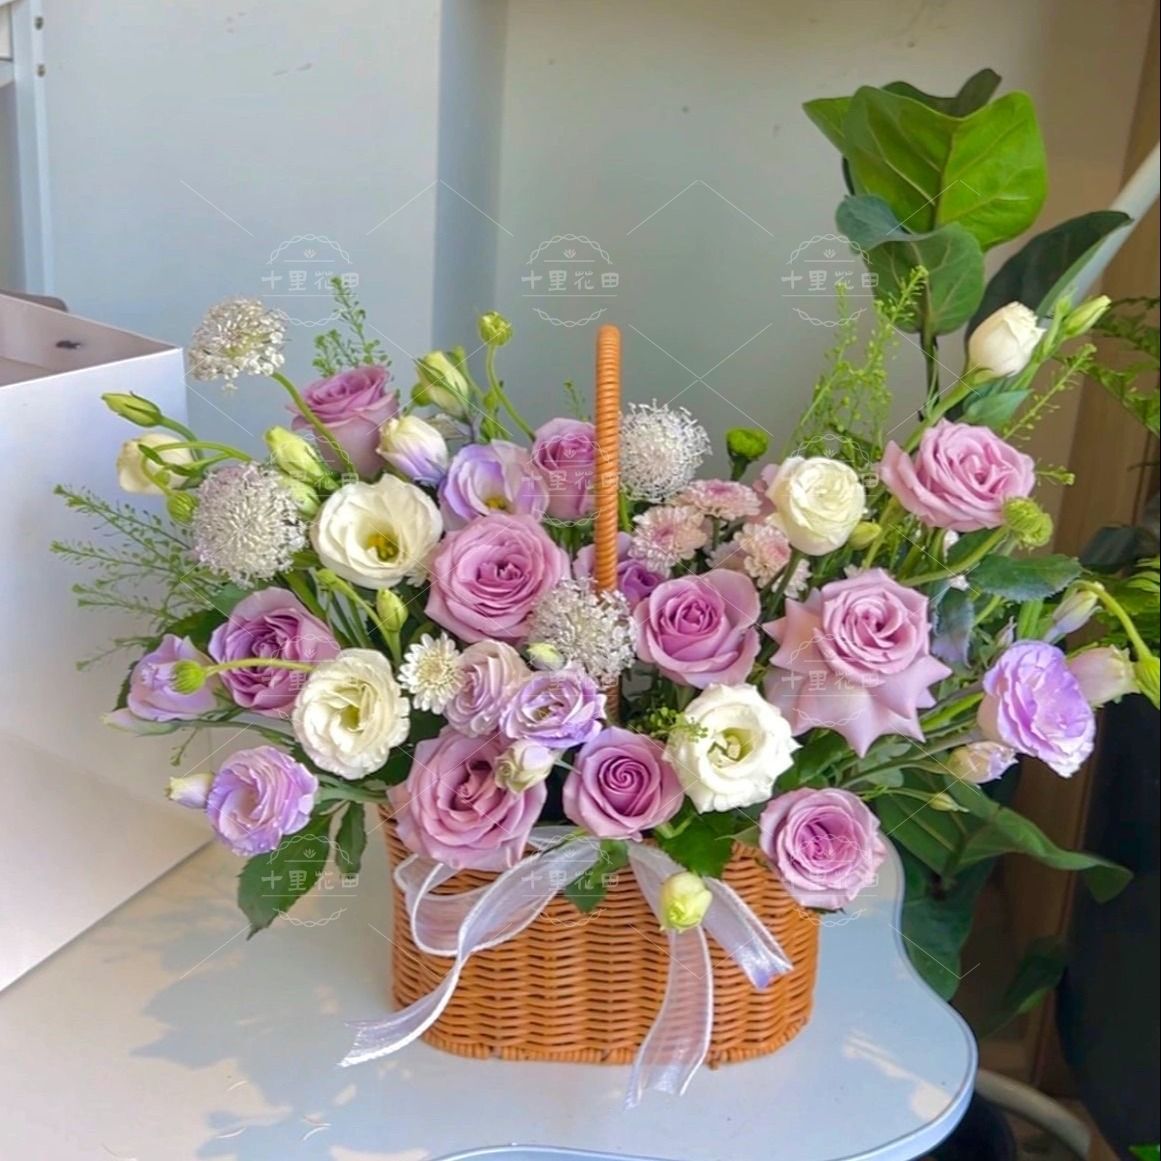 【浪漫的收藏家】紫玫瑰搭配桔梗手提花篮送长辈送朋友生日鲜花生日礼物花店送花上门